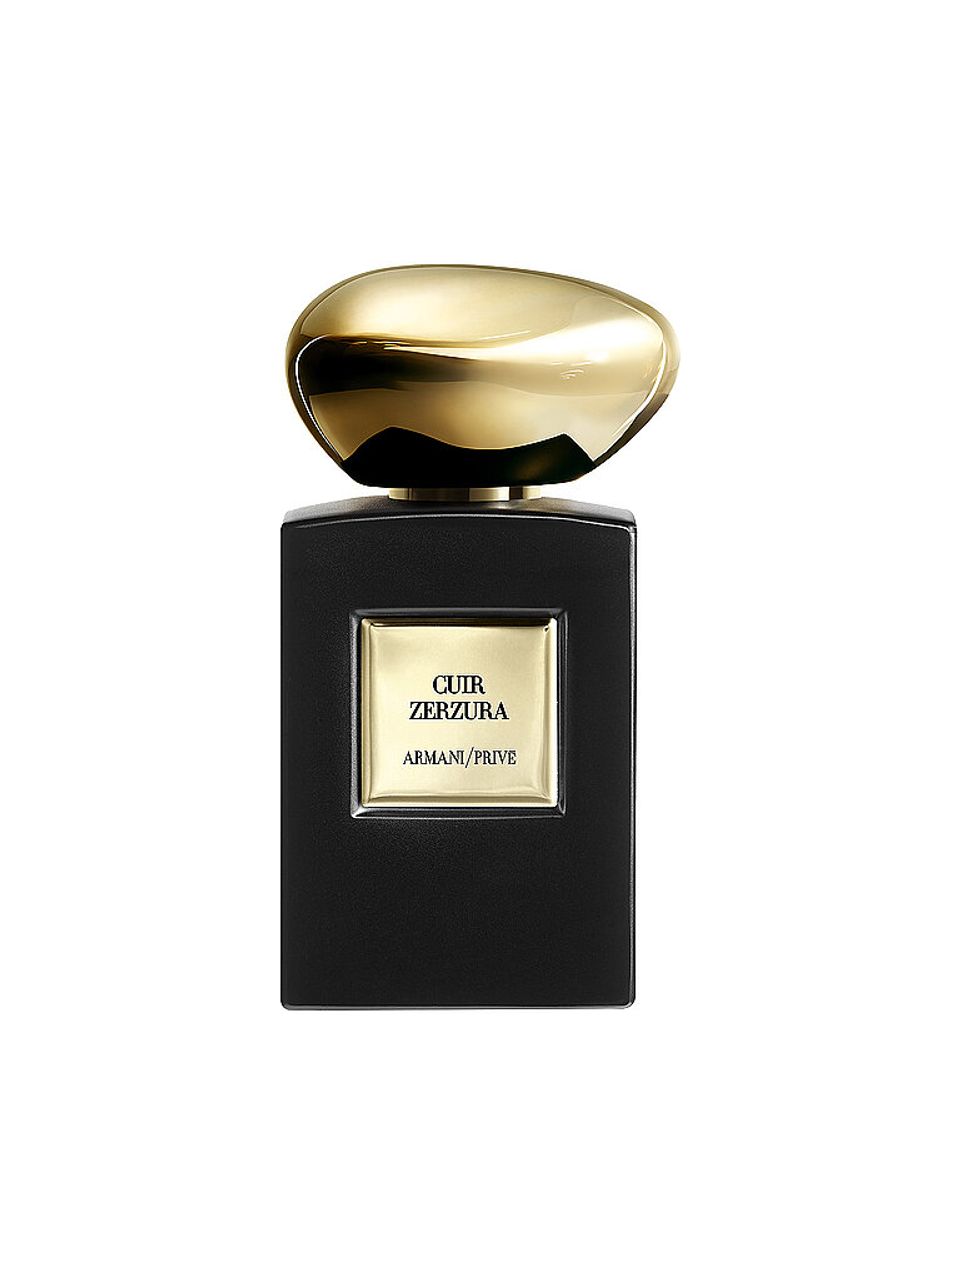 ARMANI/PRIVÉ Cuir Zerzura Eau de Parfum 50ml